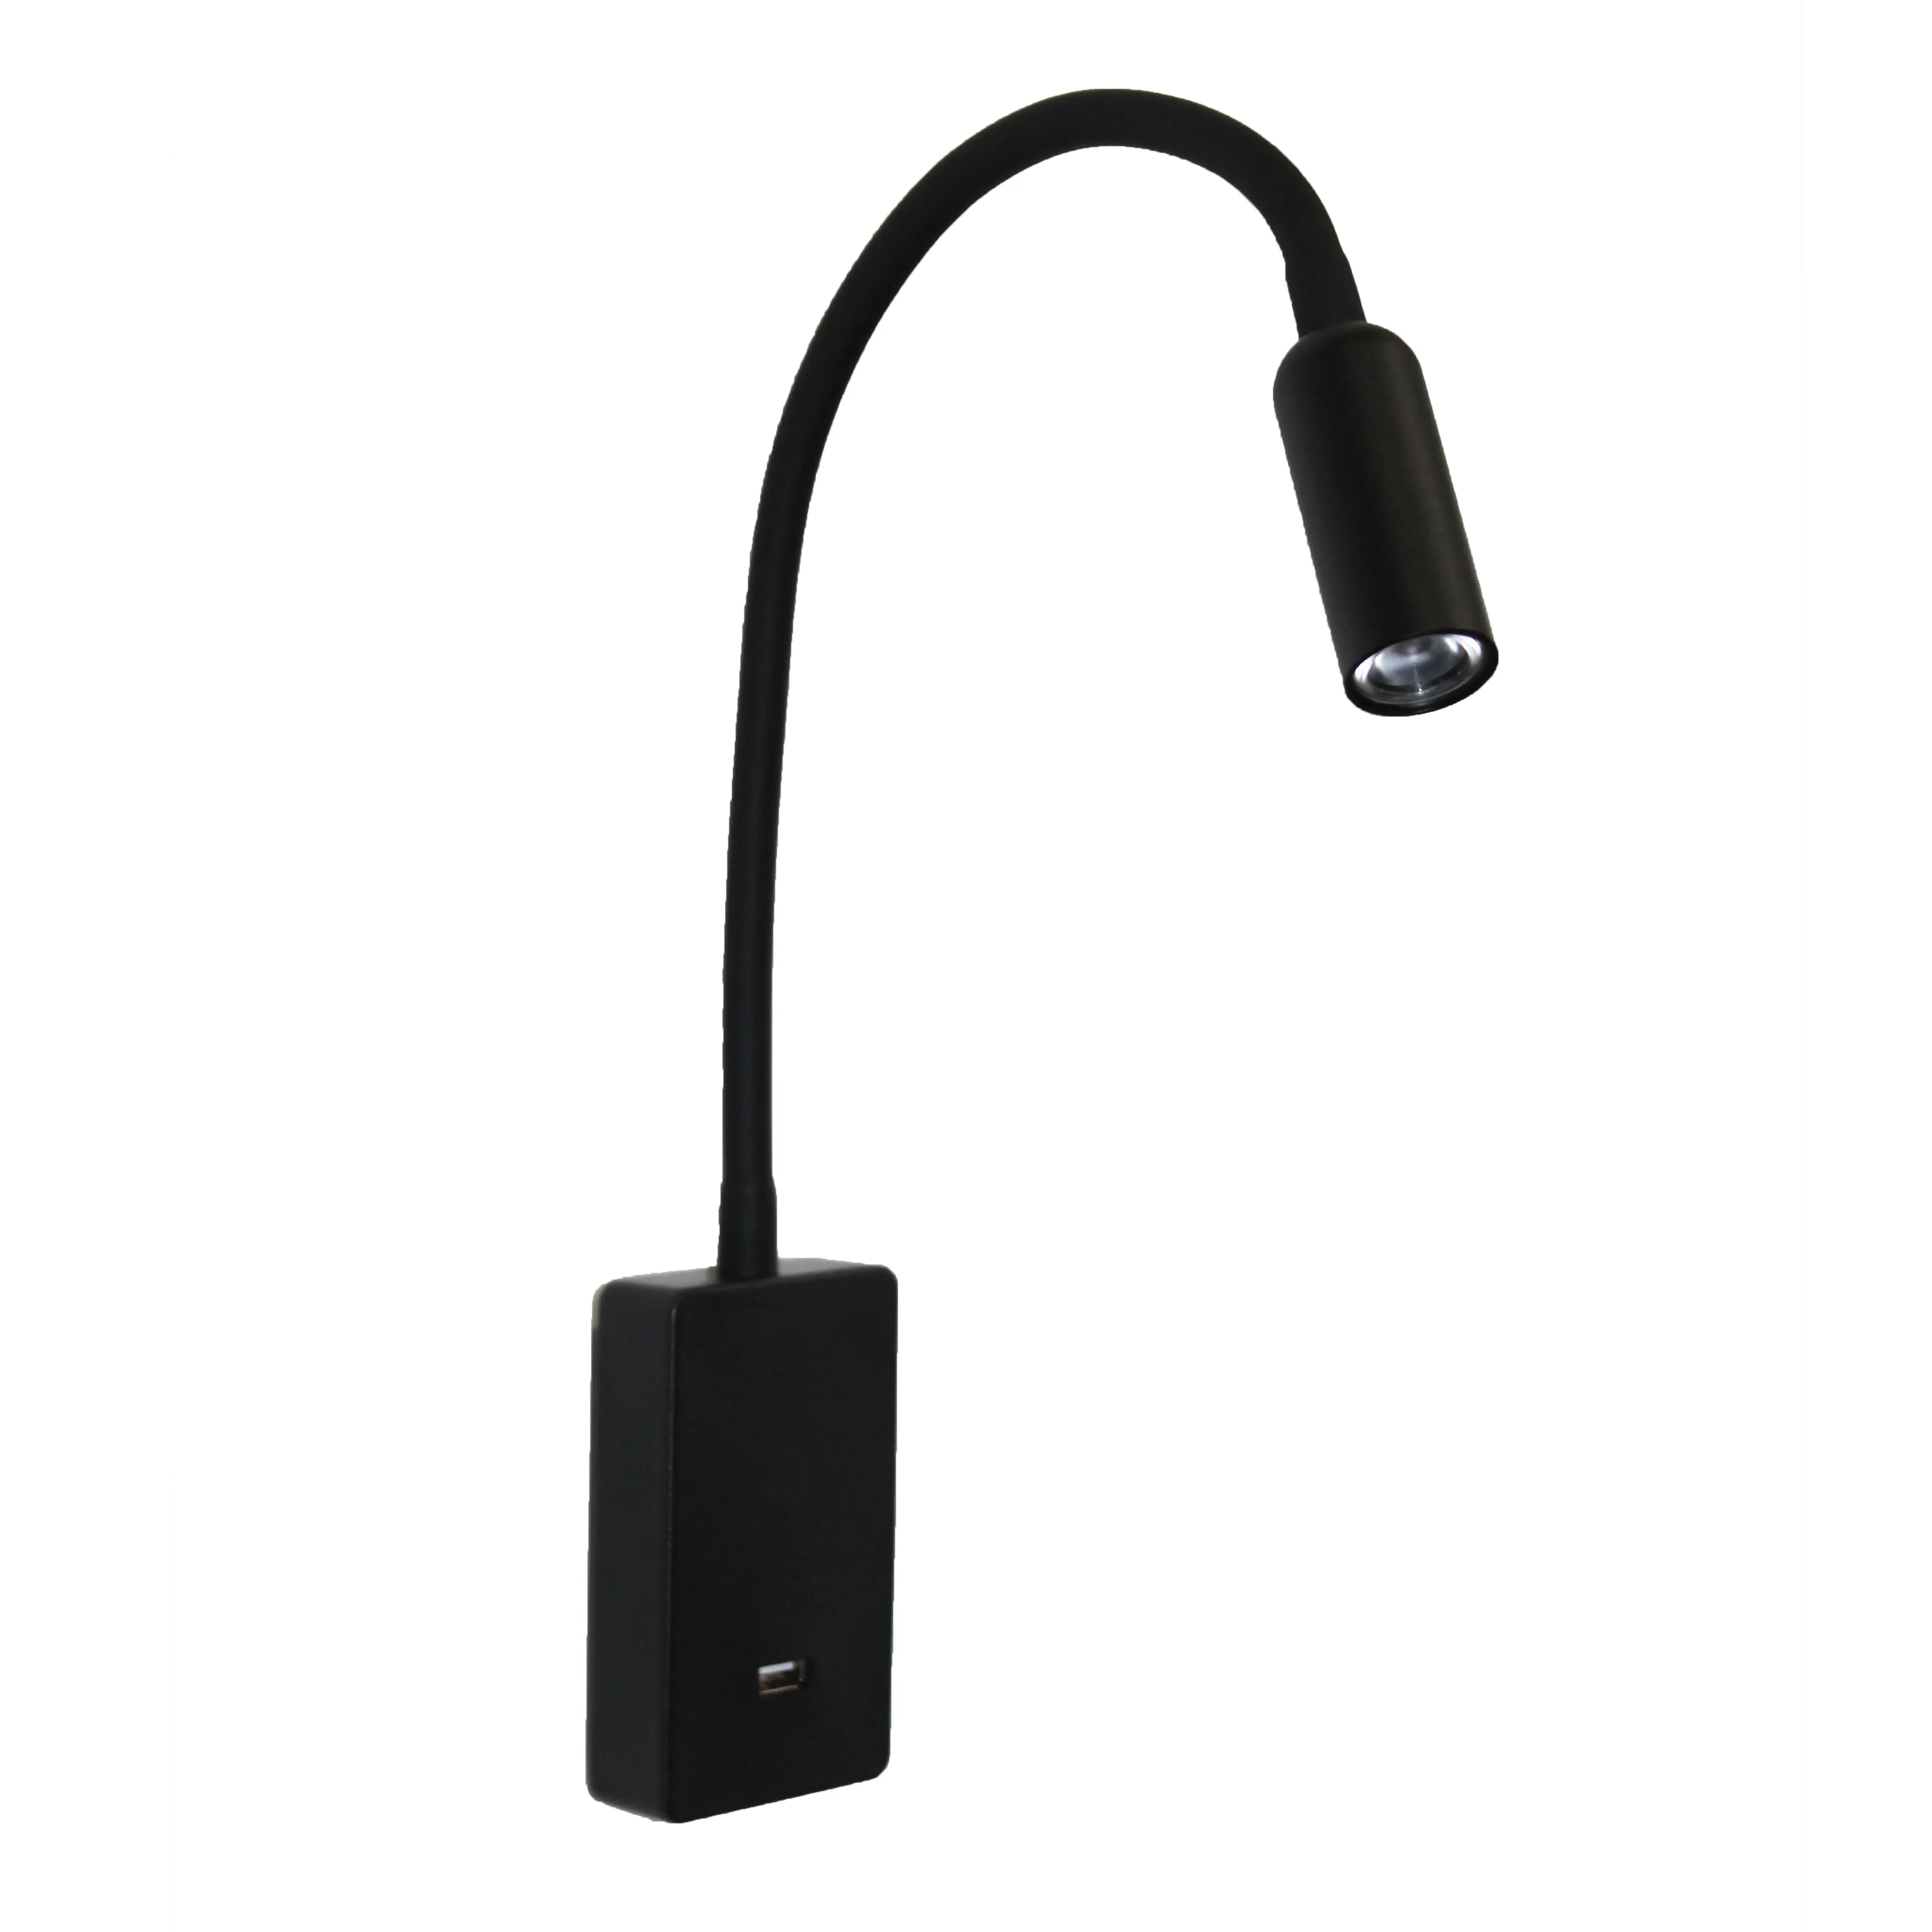 4 밝기 레벨 터치 밝기 조절이 가능한 금속 LED 벽 침대 옆 램프 USB 포트 충전 침실 조명